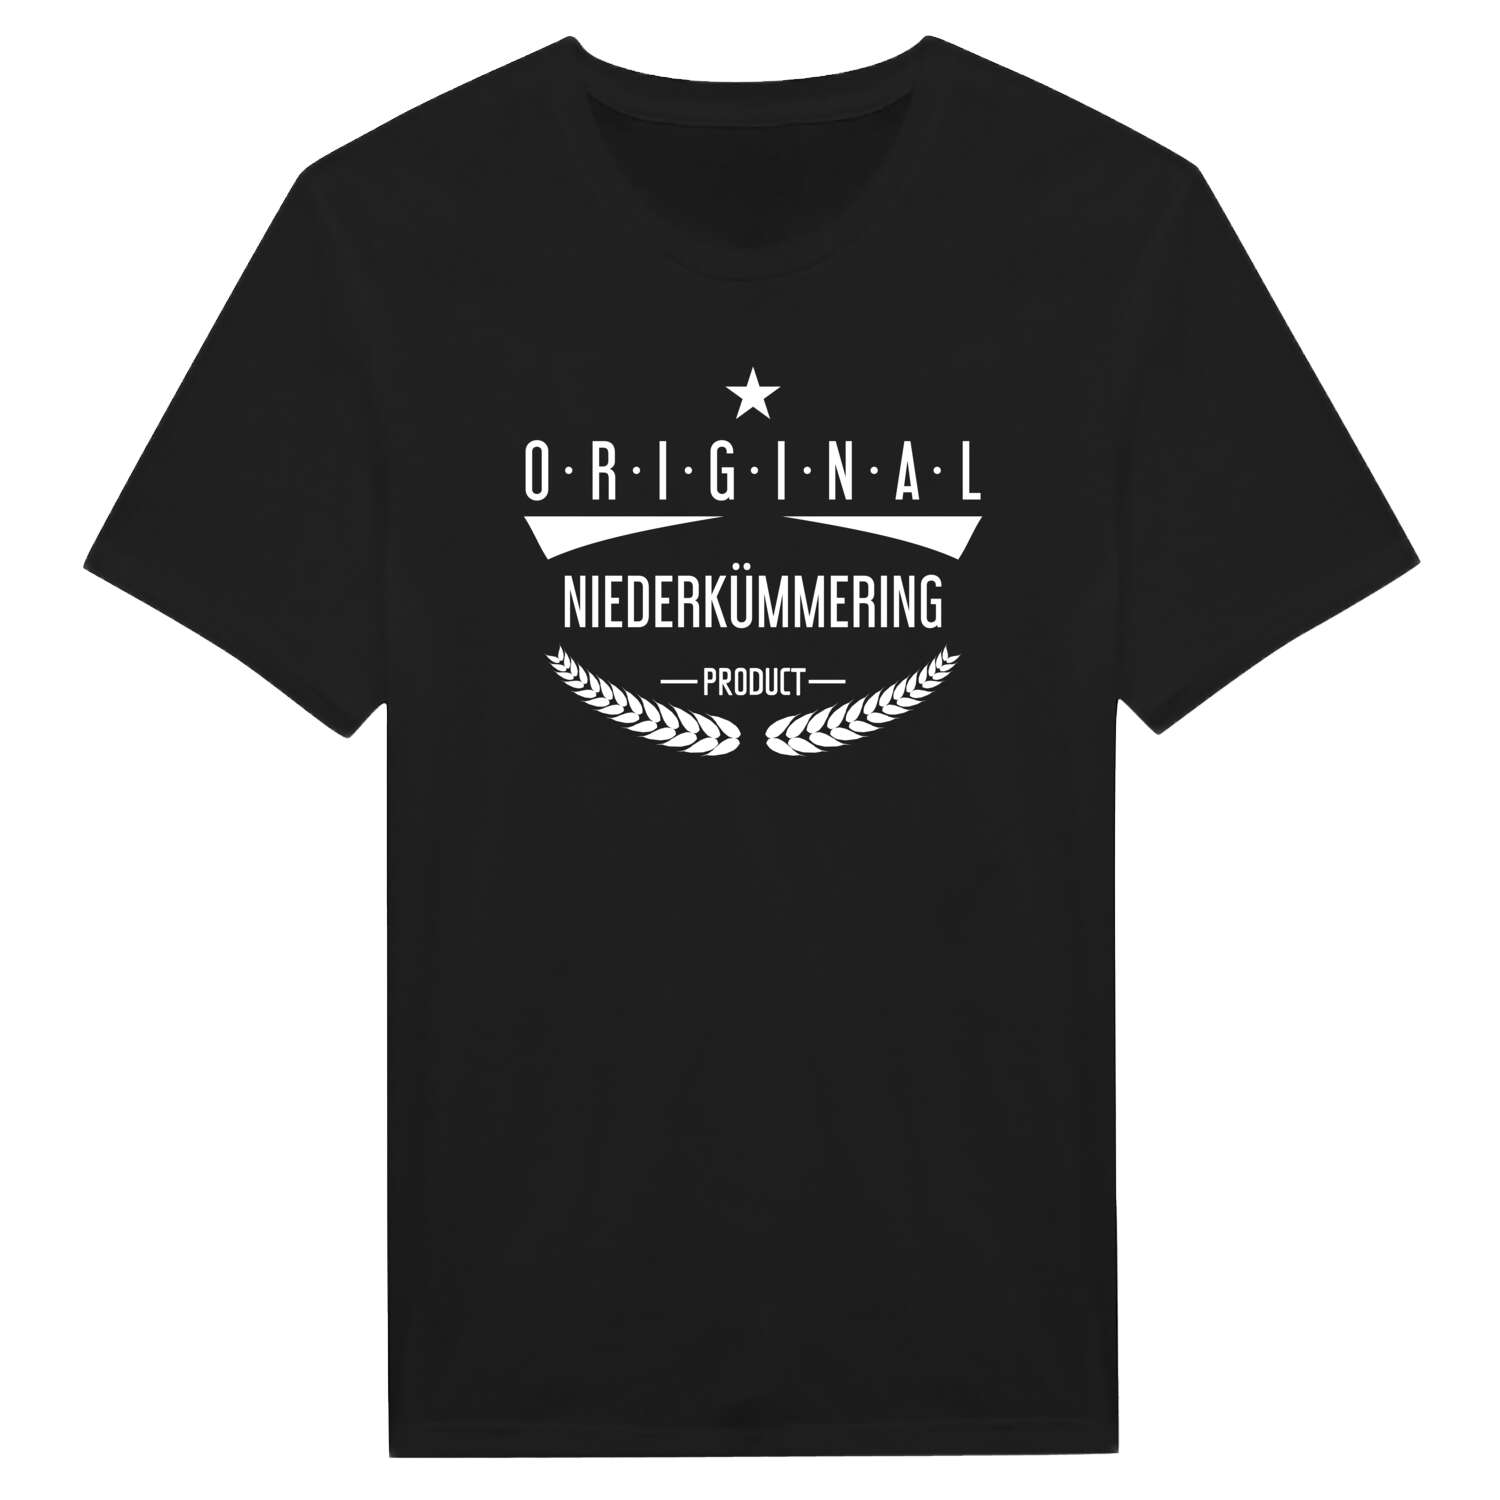 Niederkümmering T-Shirt »Original Product«